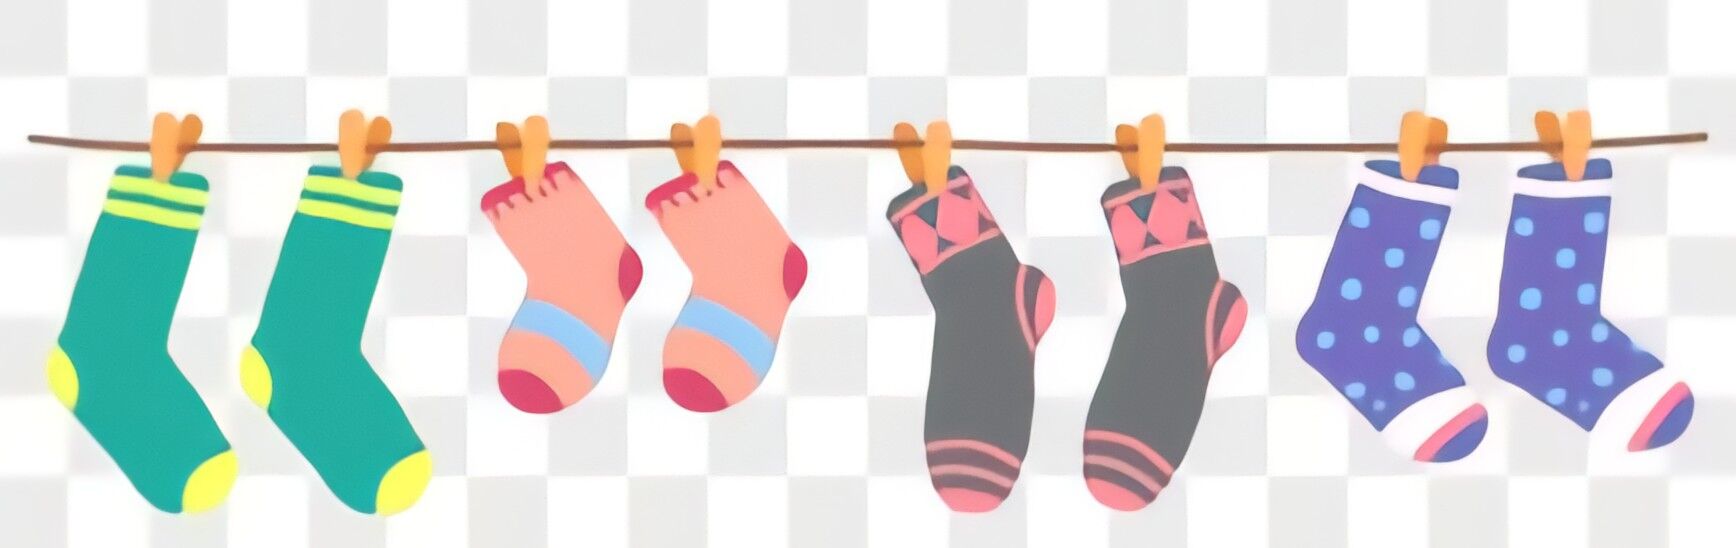 Personalized Matching Socks